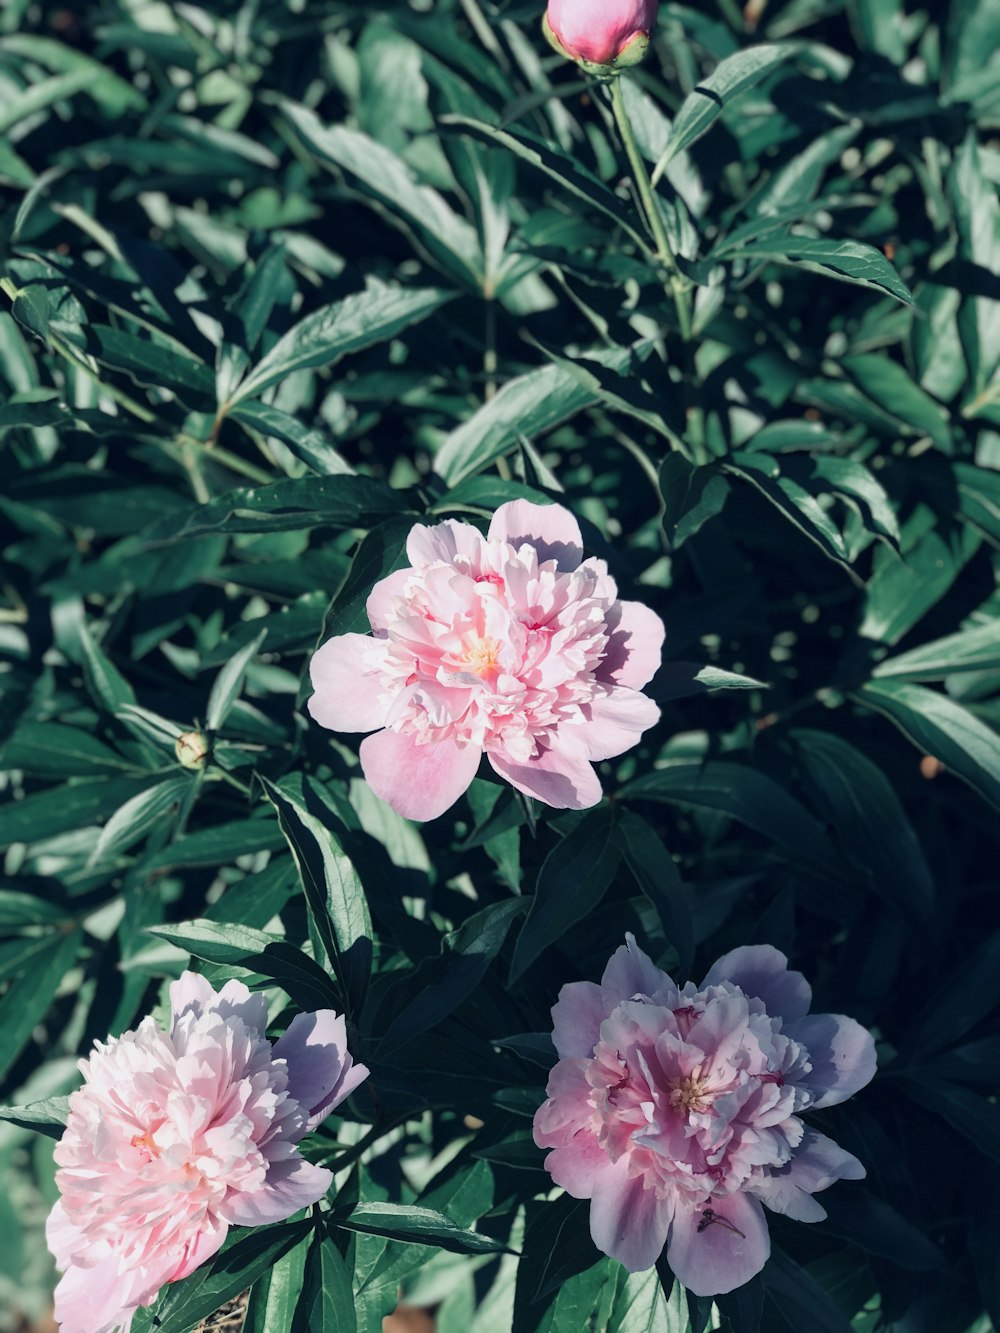 grünblättrige Pflanze mit rosa Blütenblättern